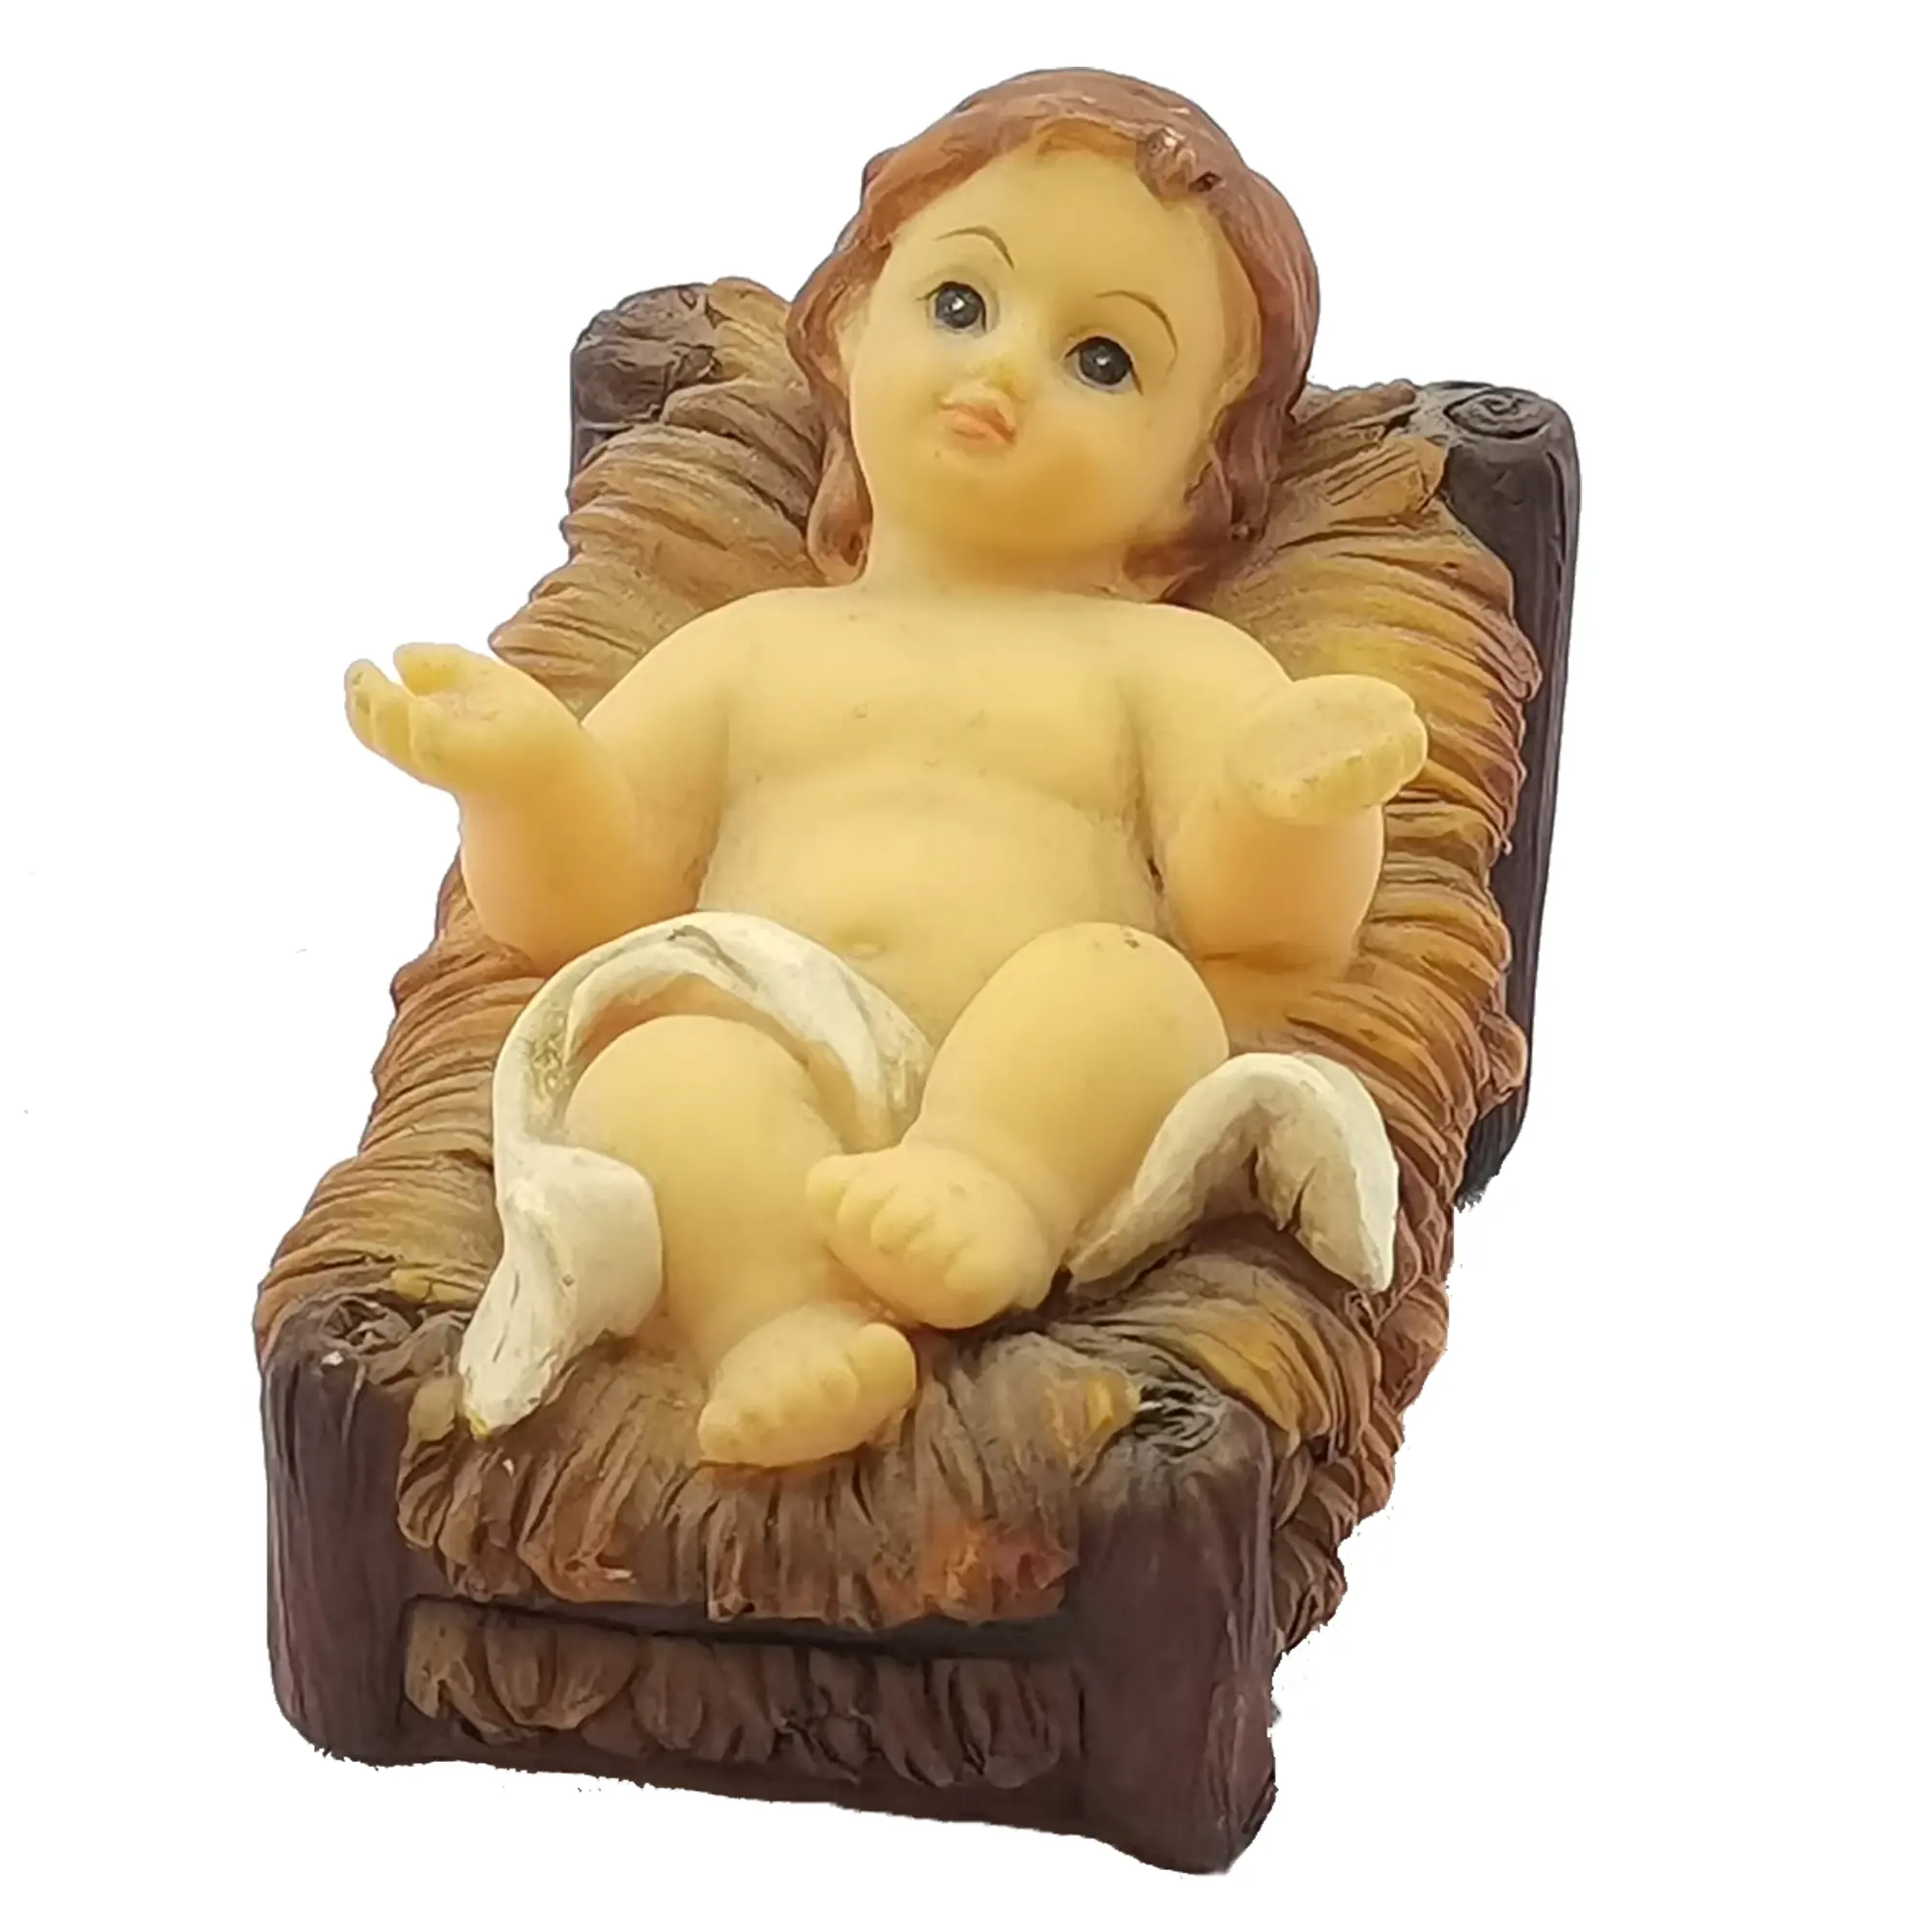 Top Grace-Conjunto de figuritas de resina de Navidad, estatua de escena de Natividad religiosa de 8 pulgadas